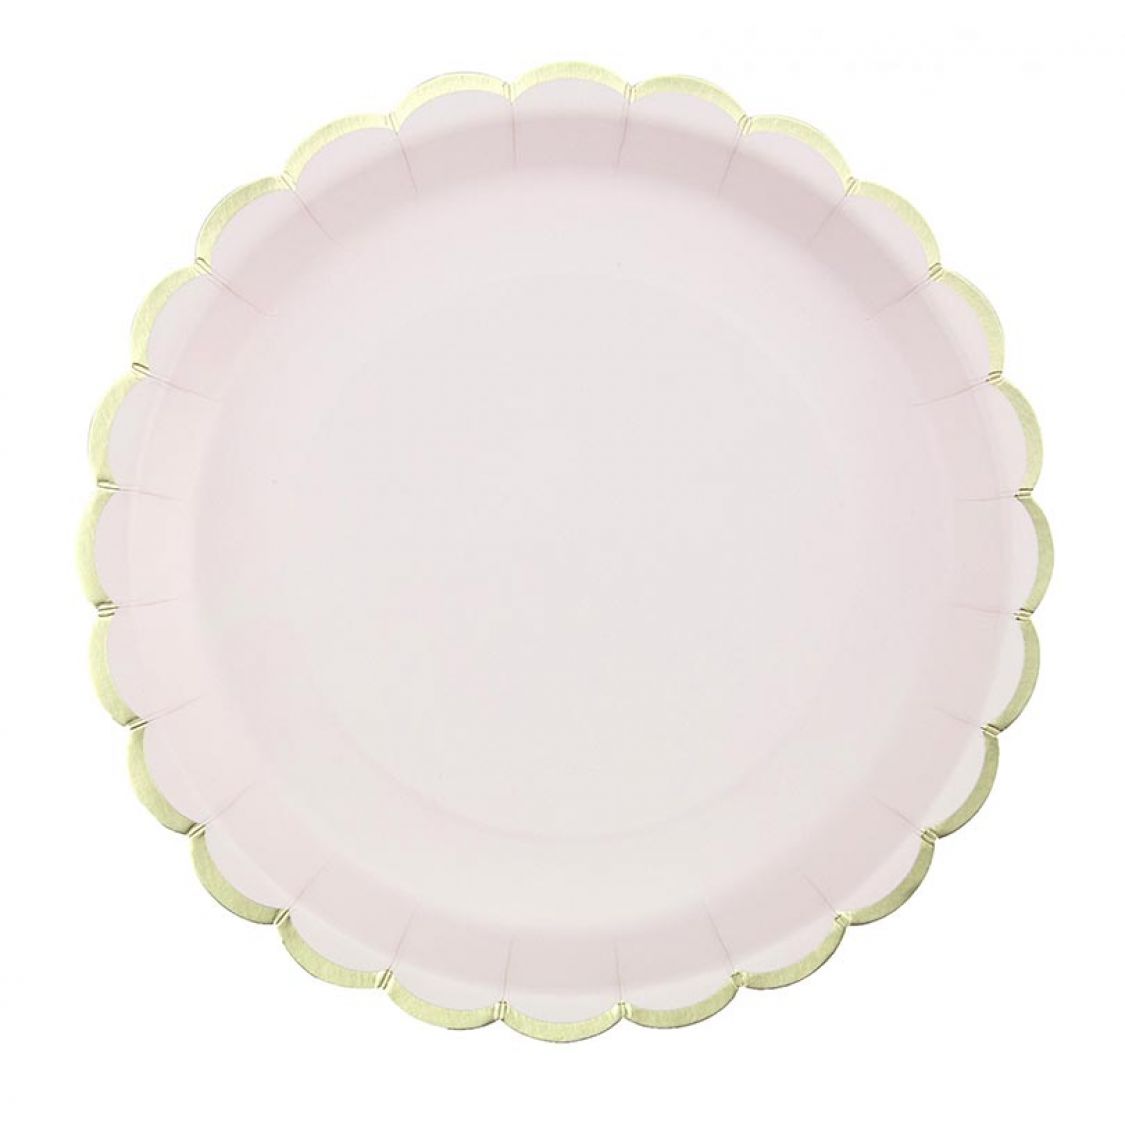 Assiettes en carton blanc - 8 pièces - Vaisselle jetable et